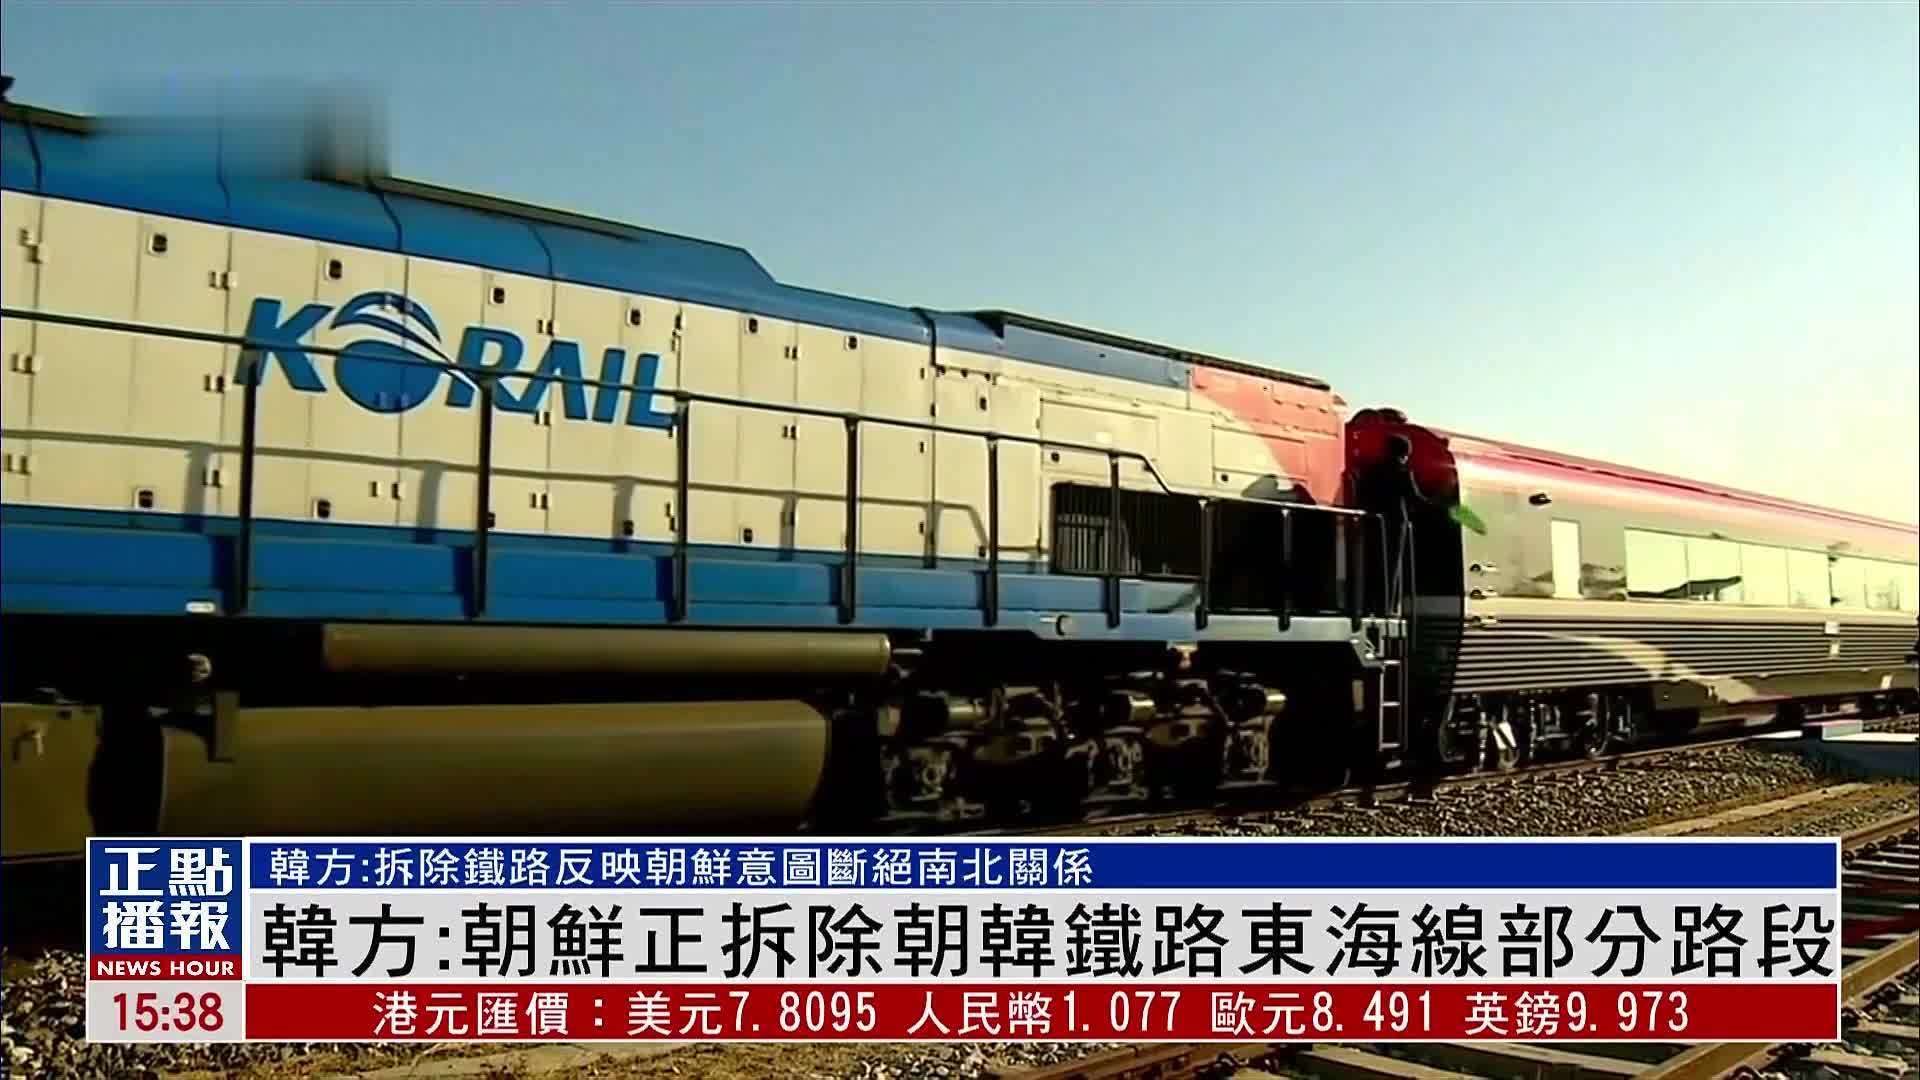 韩方:朝鲜正拆除朝韩铁路东海线部分路段 意图断绝南北关系